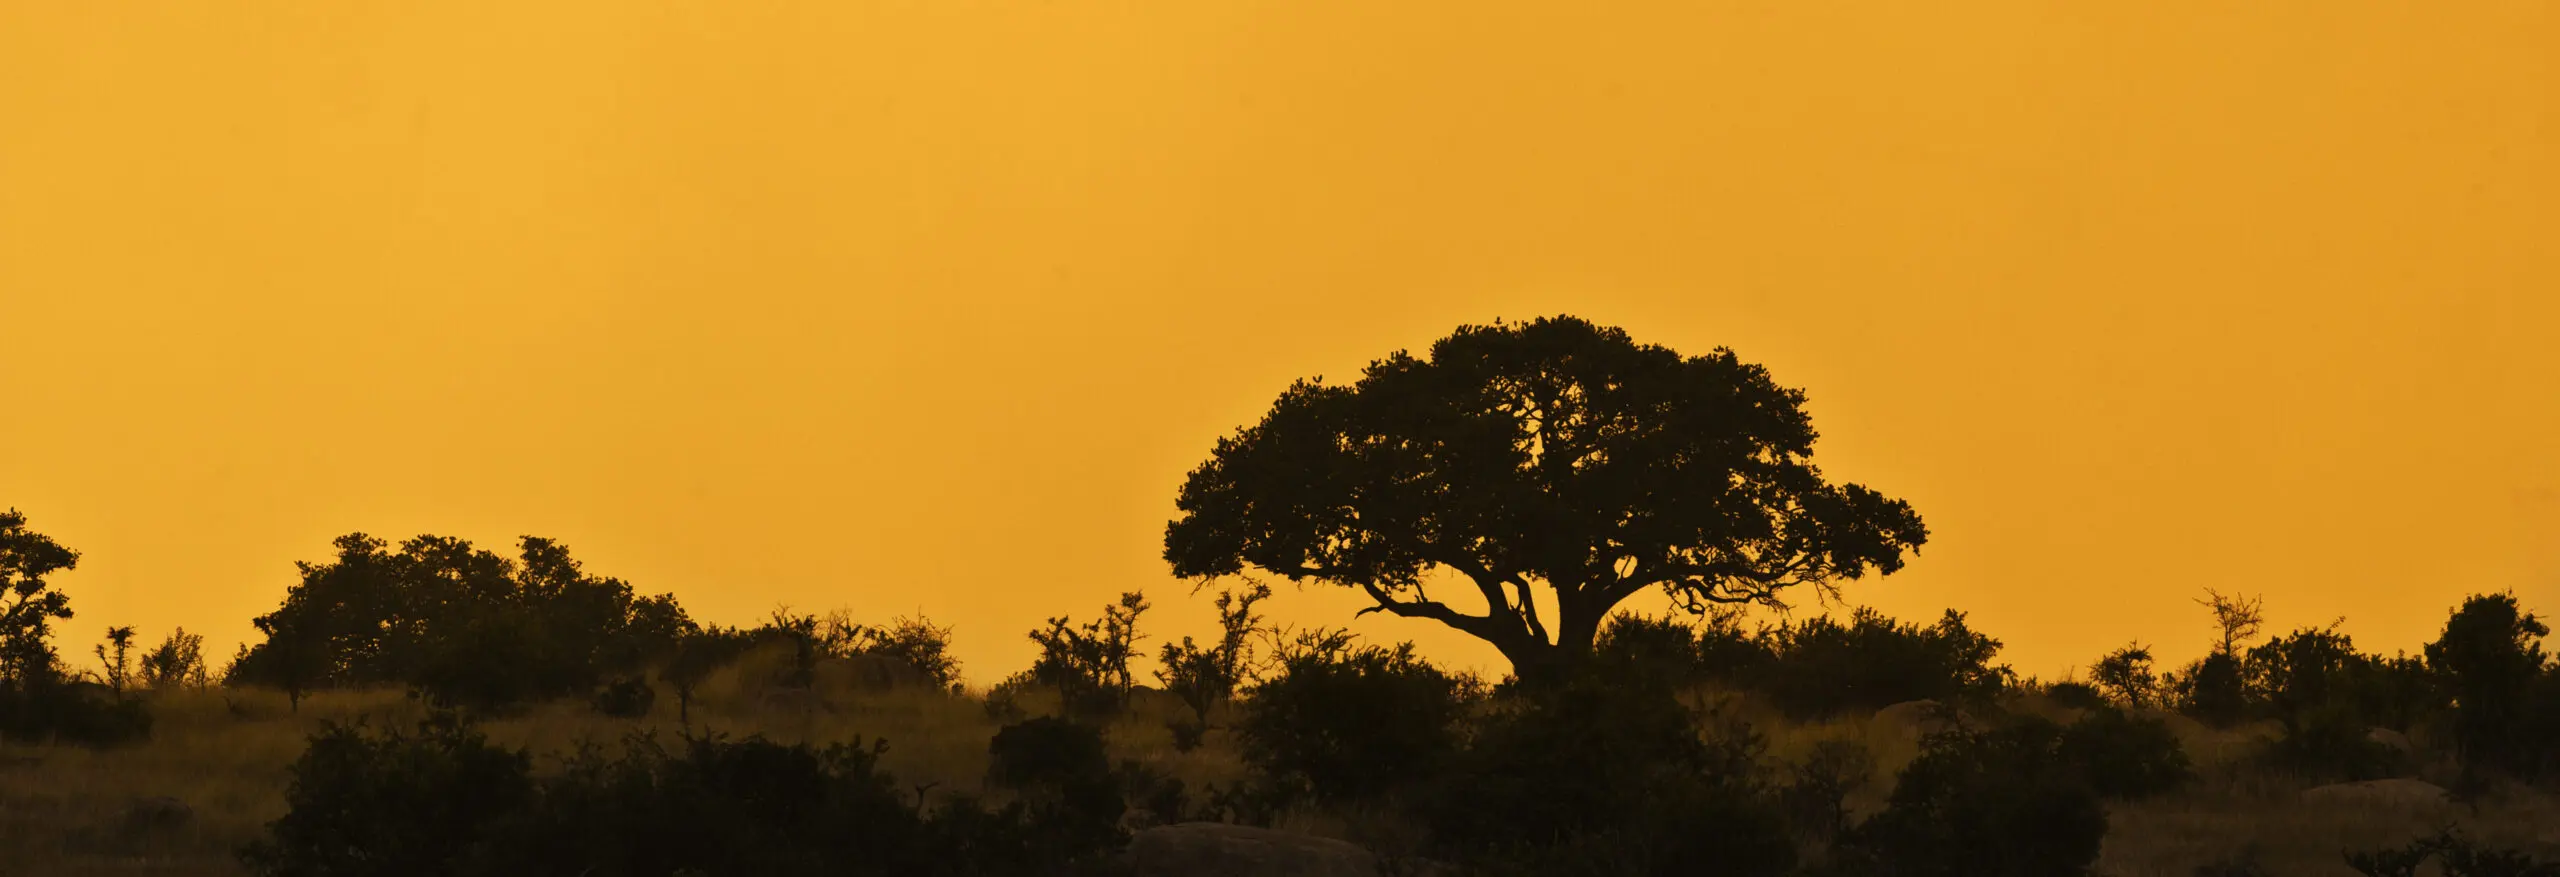 Wandbild (372) glowy Candelaber präsentiert: Landschaften,Afrika